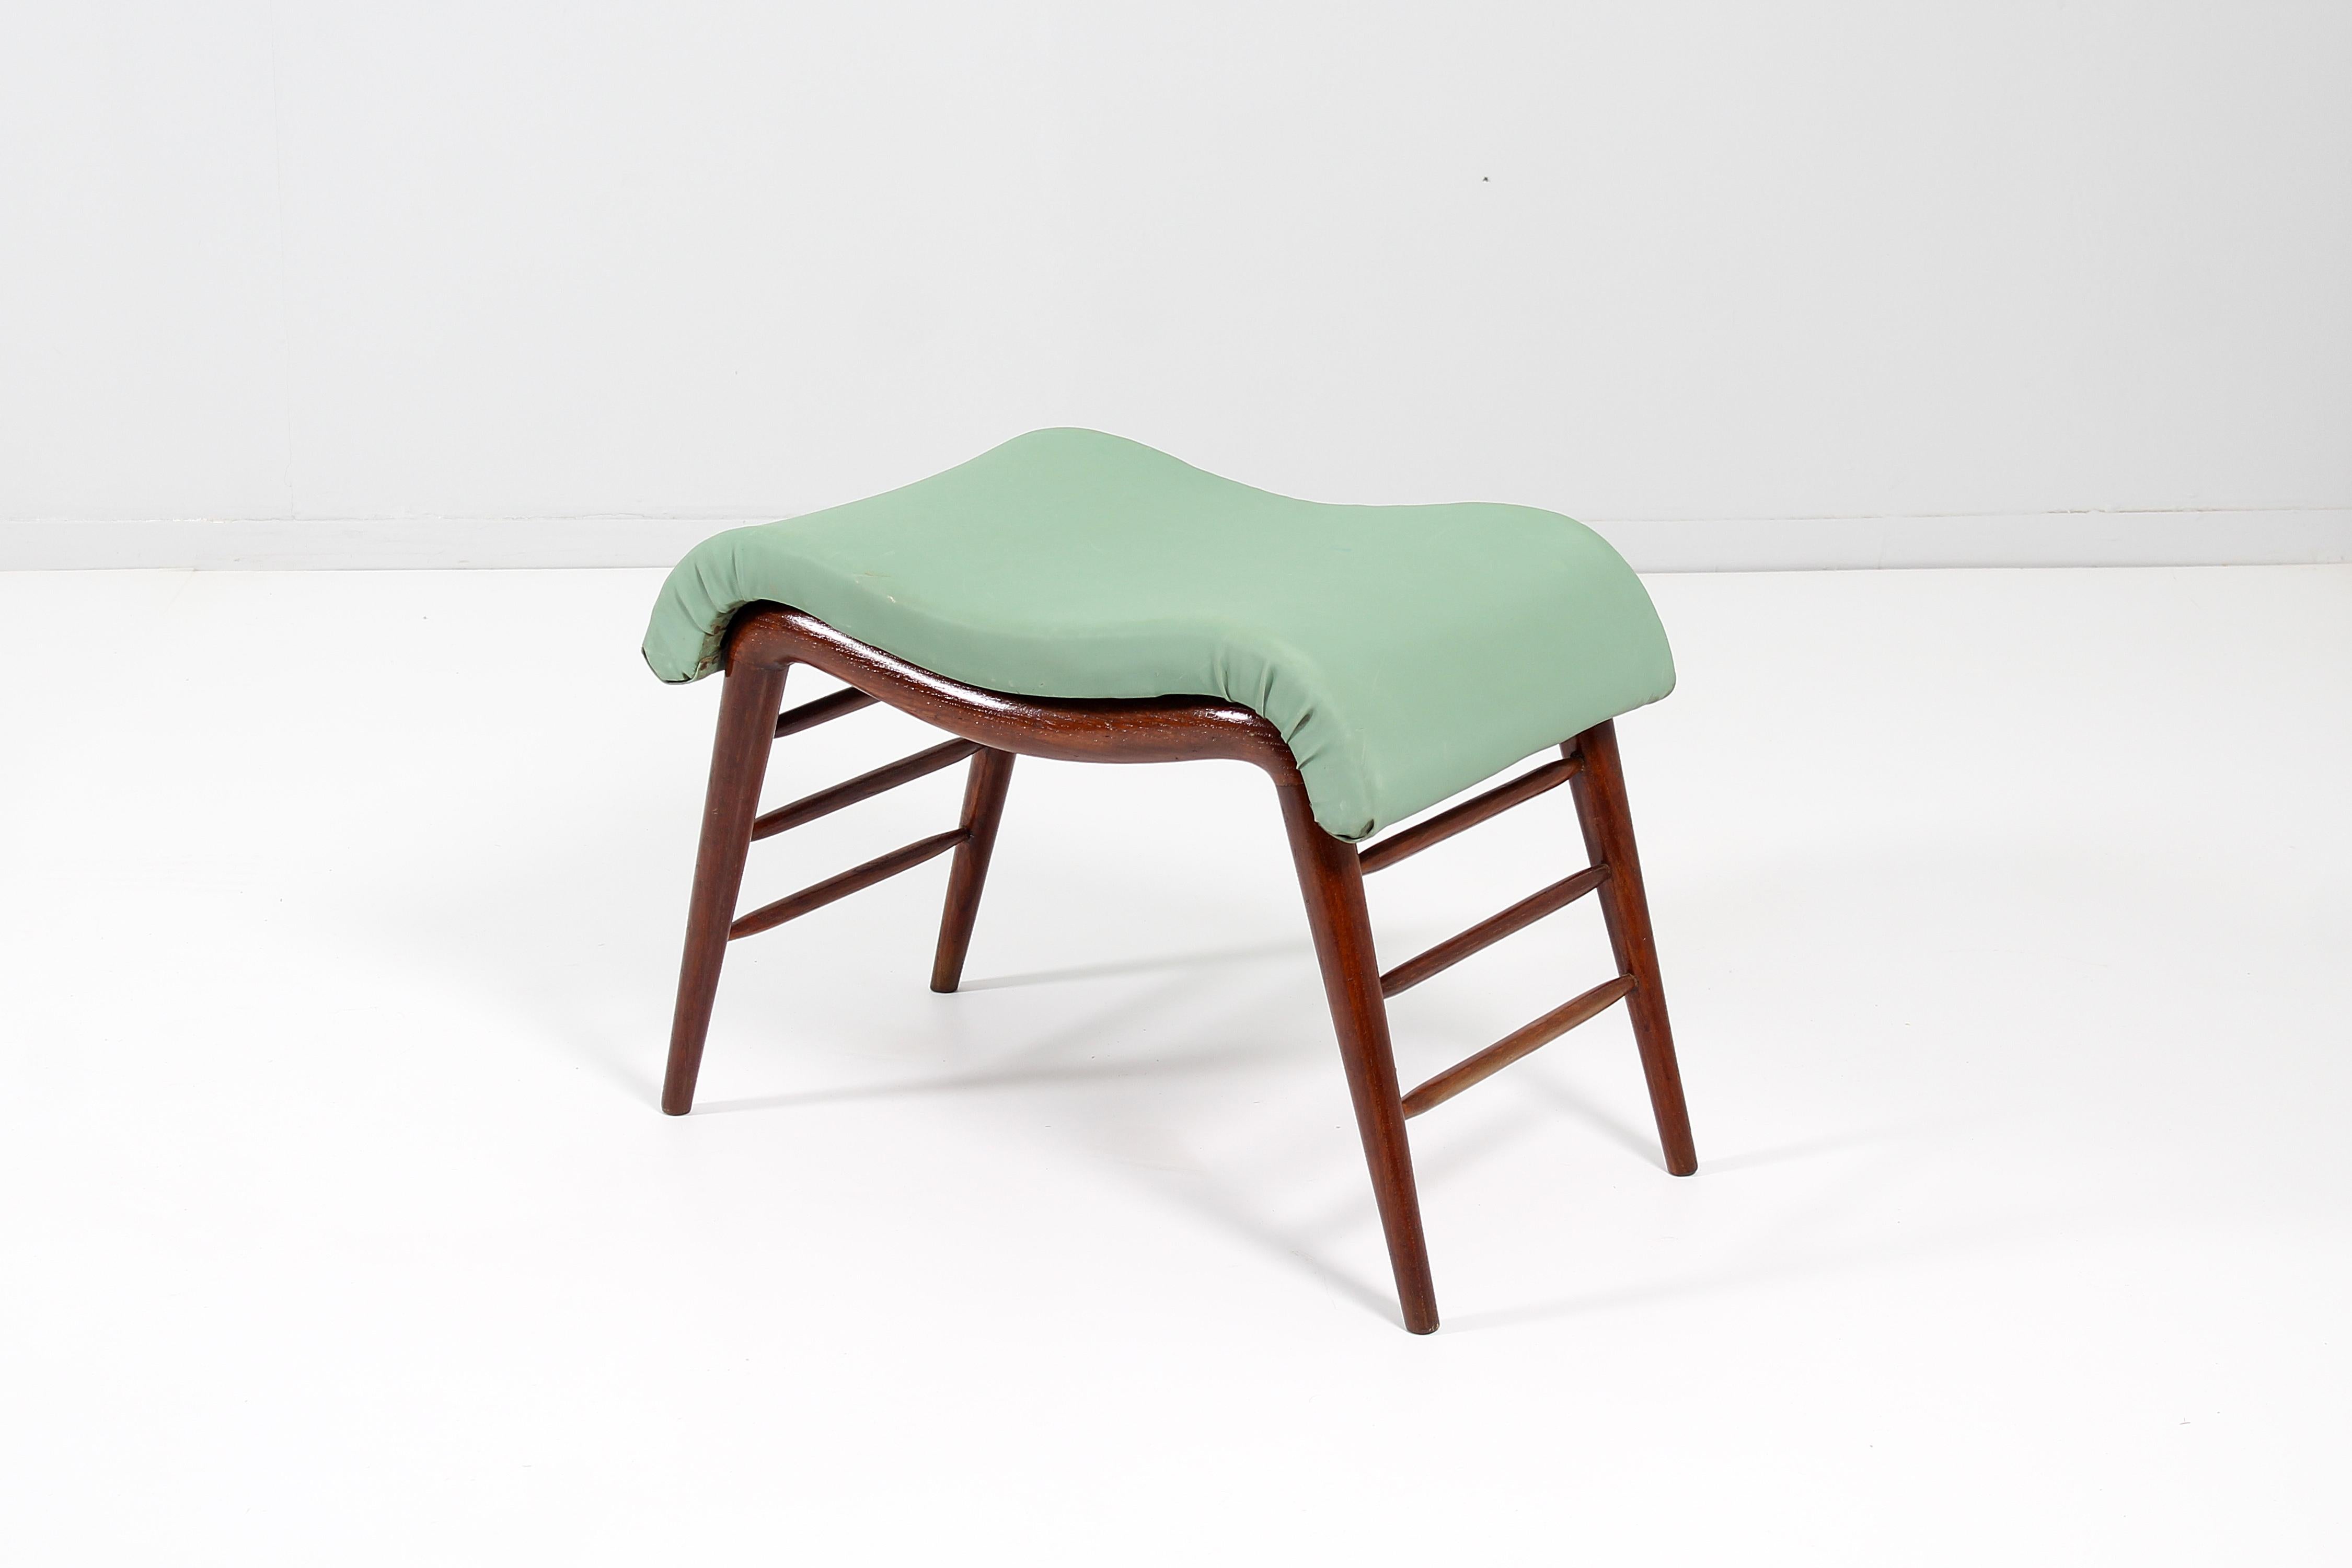 Elegant banc (ou ottoman) en bois courbé, avec assise tapissée de tissu vert clair.
Production italienne dans le style de Paolo Buffa, années 60.


